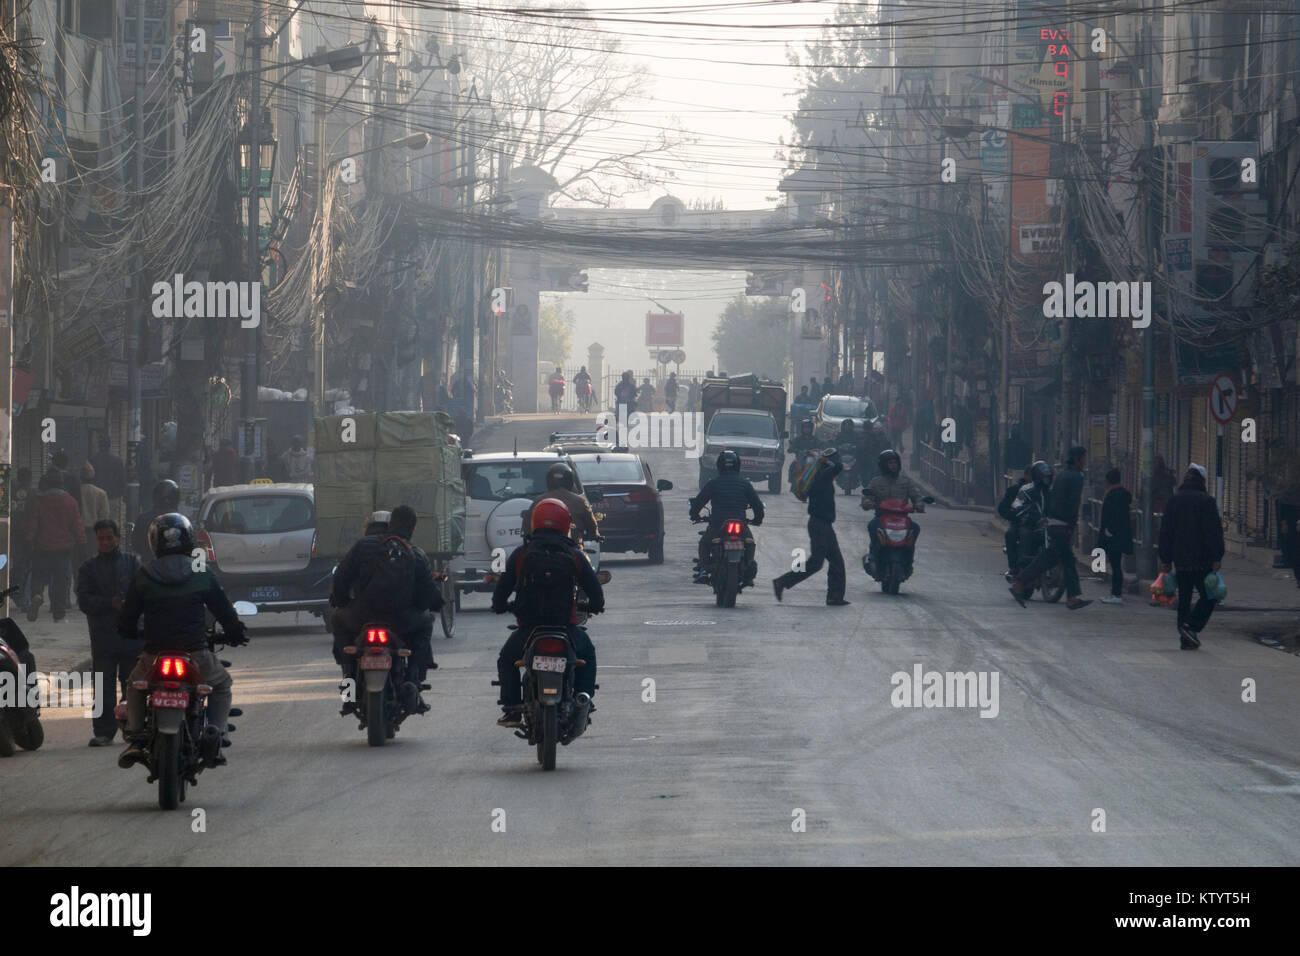 Les motos et la circulation automobile dans la rue de Katmandou, Népal Banque D'Images